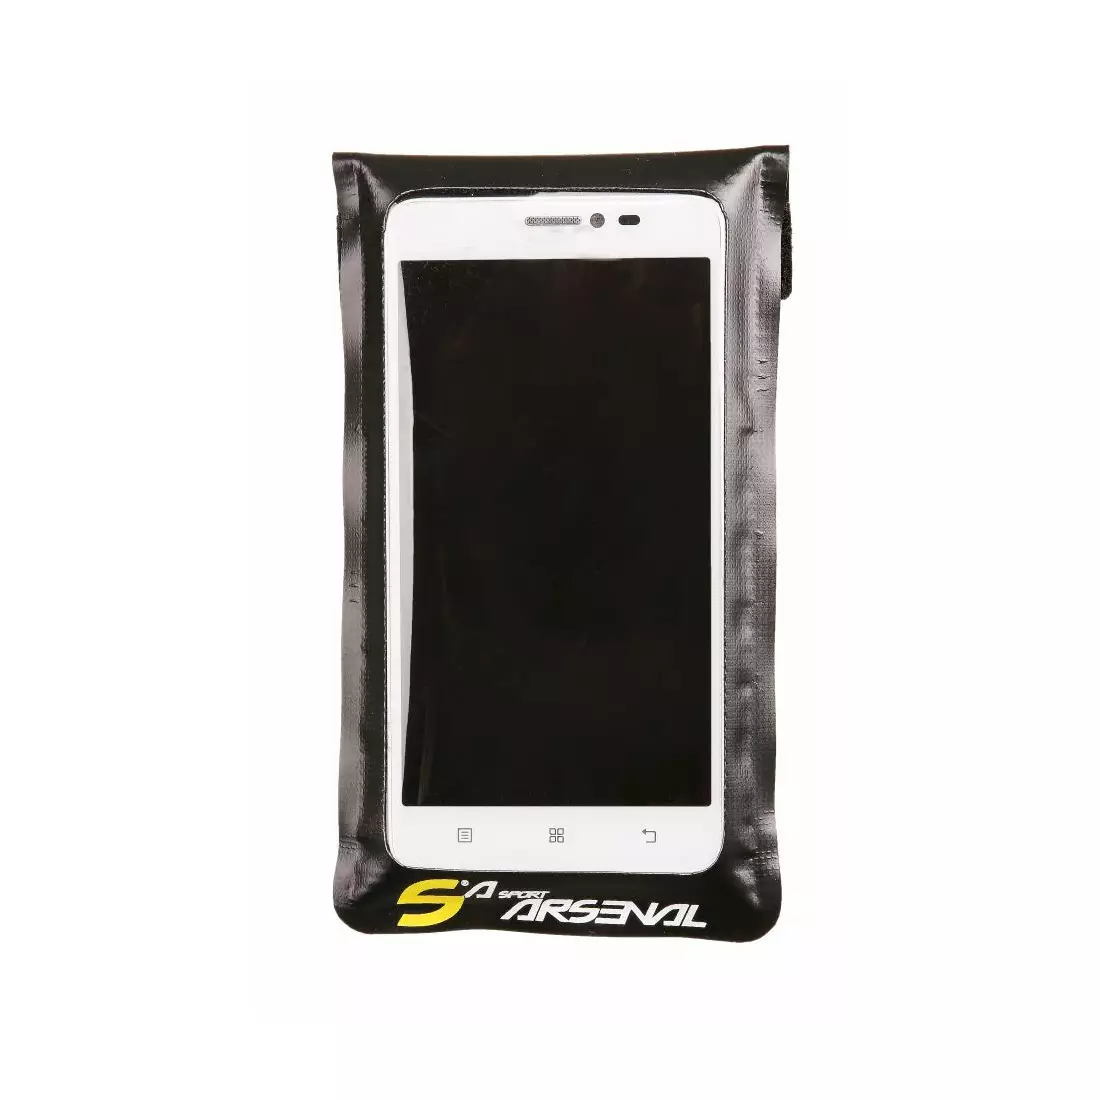 SPORT ARSENAL 532 Pouzdro na kolo pro smartphone, velké 5,5'-6,5'